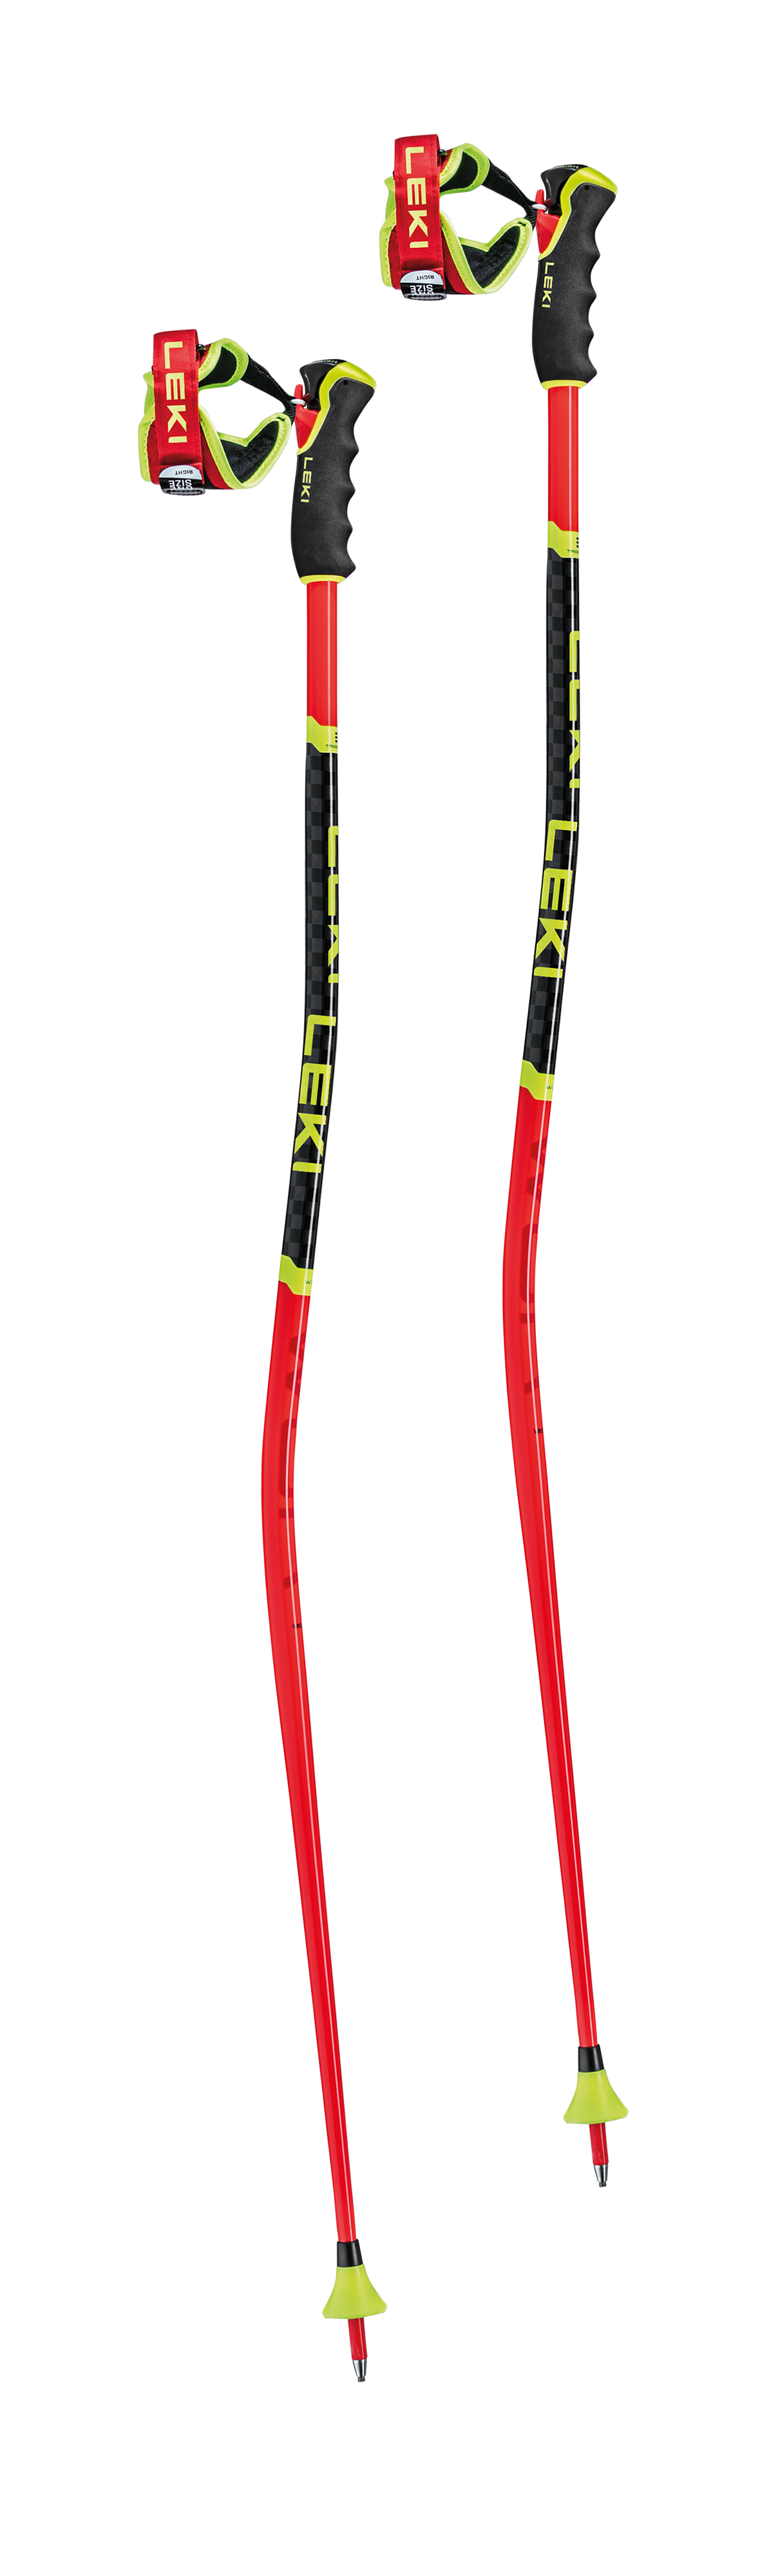 LEKI USA - WCR GS 3D - Ski Racing Poles